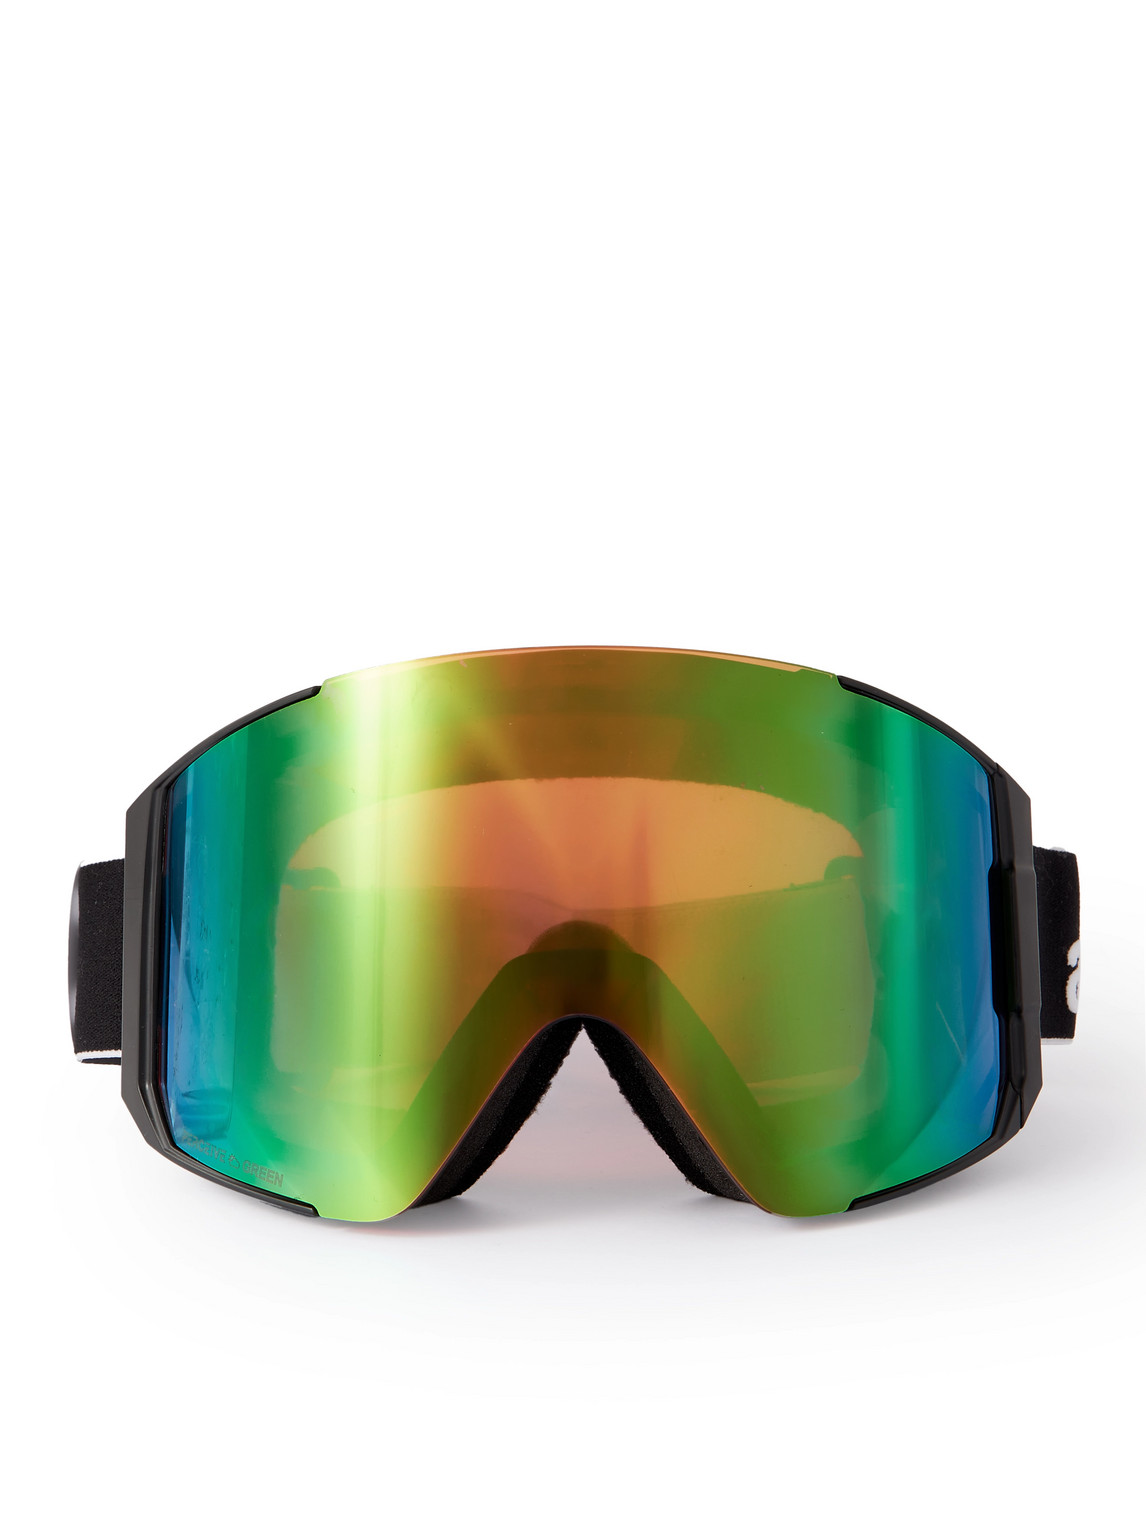 Anon Sync Ski Goggles In Black